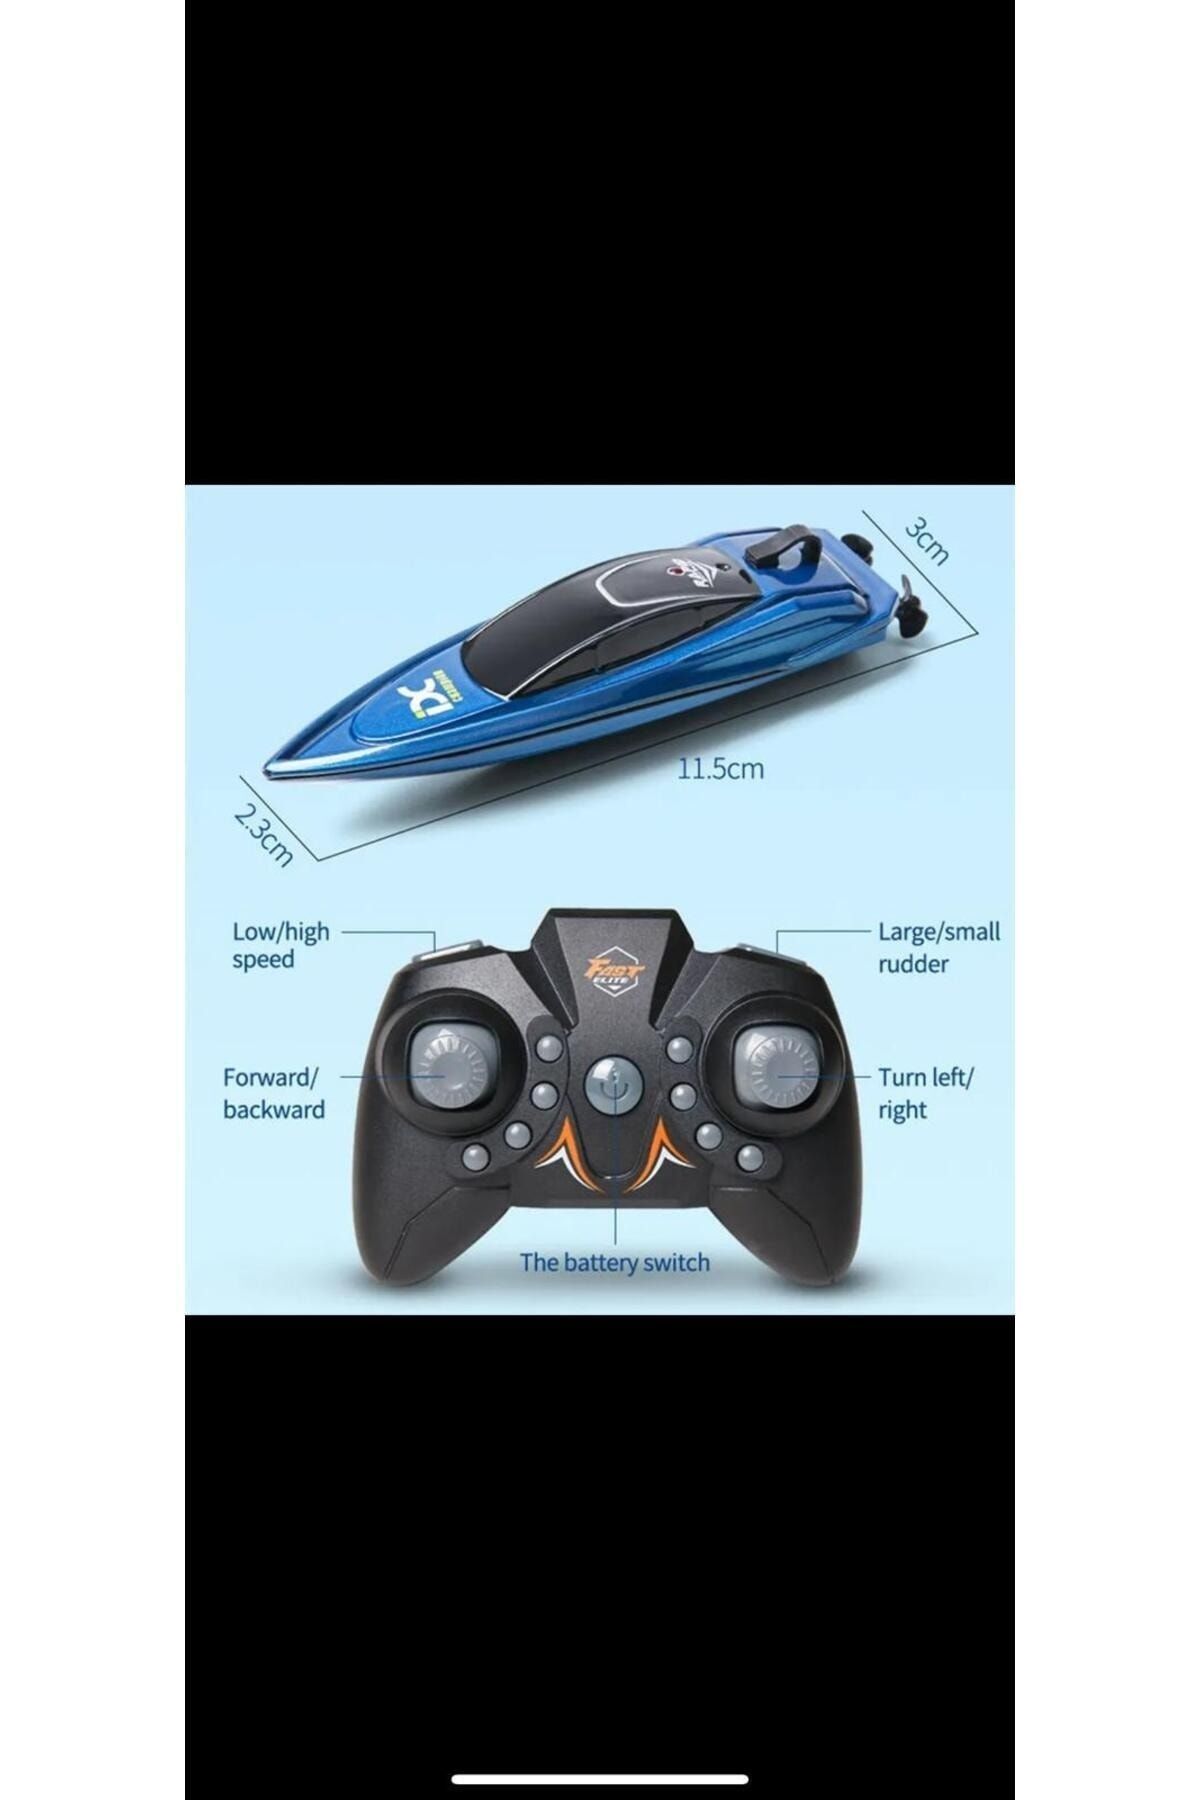 Zigver MiniRCtekne 5 km/h radyo uzaktan kumanda yüksekhızlı gemi Palm elektrikli havuz tekne oyuncak model